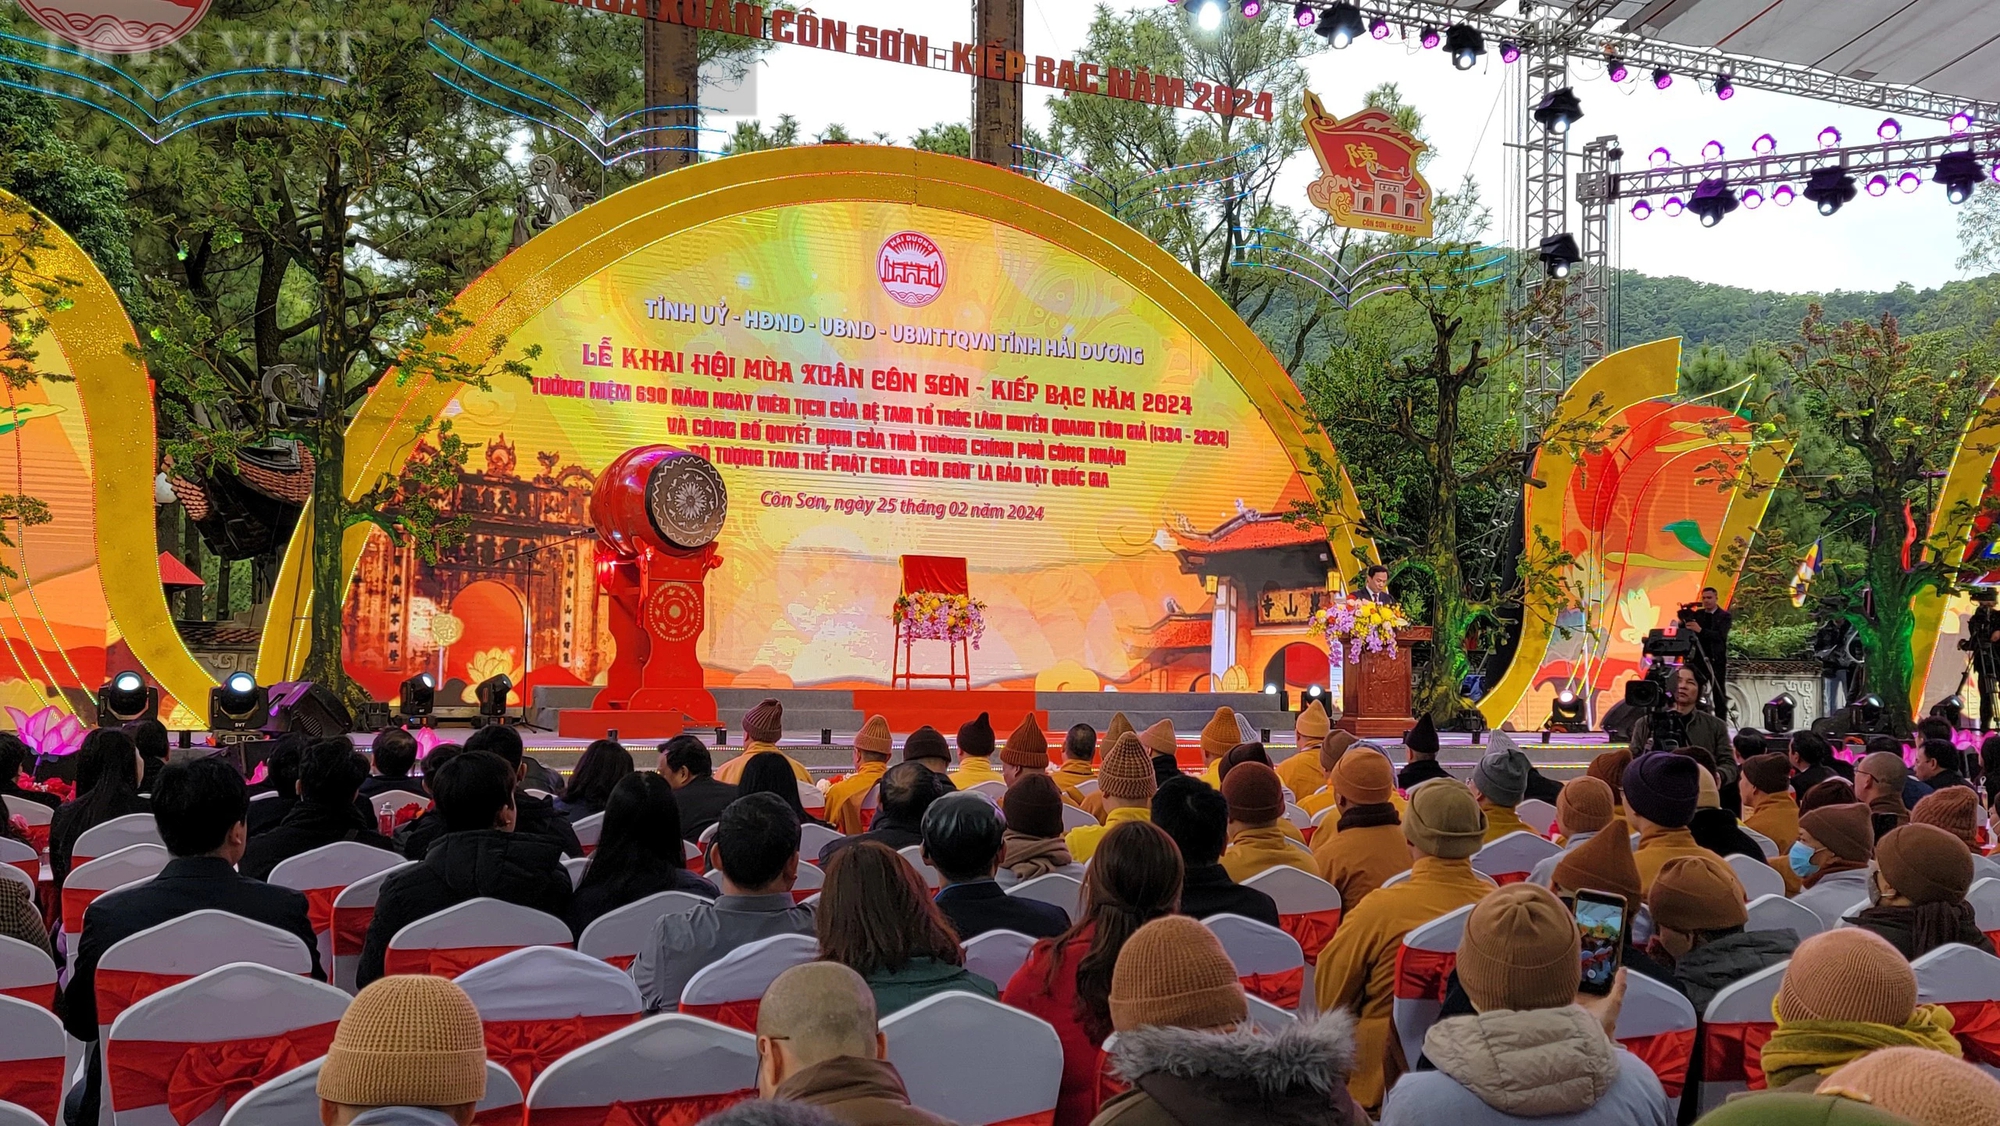 Lễ công bố Bảo vật Quốc gia bộ tượng Tam Thế Phật, khai hội mùa xuân Côn Sơn - Kiếp Bạc- Ảnh 1.